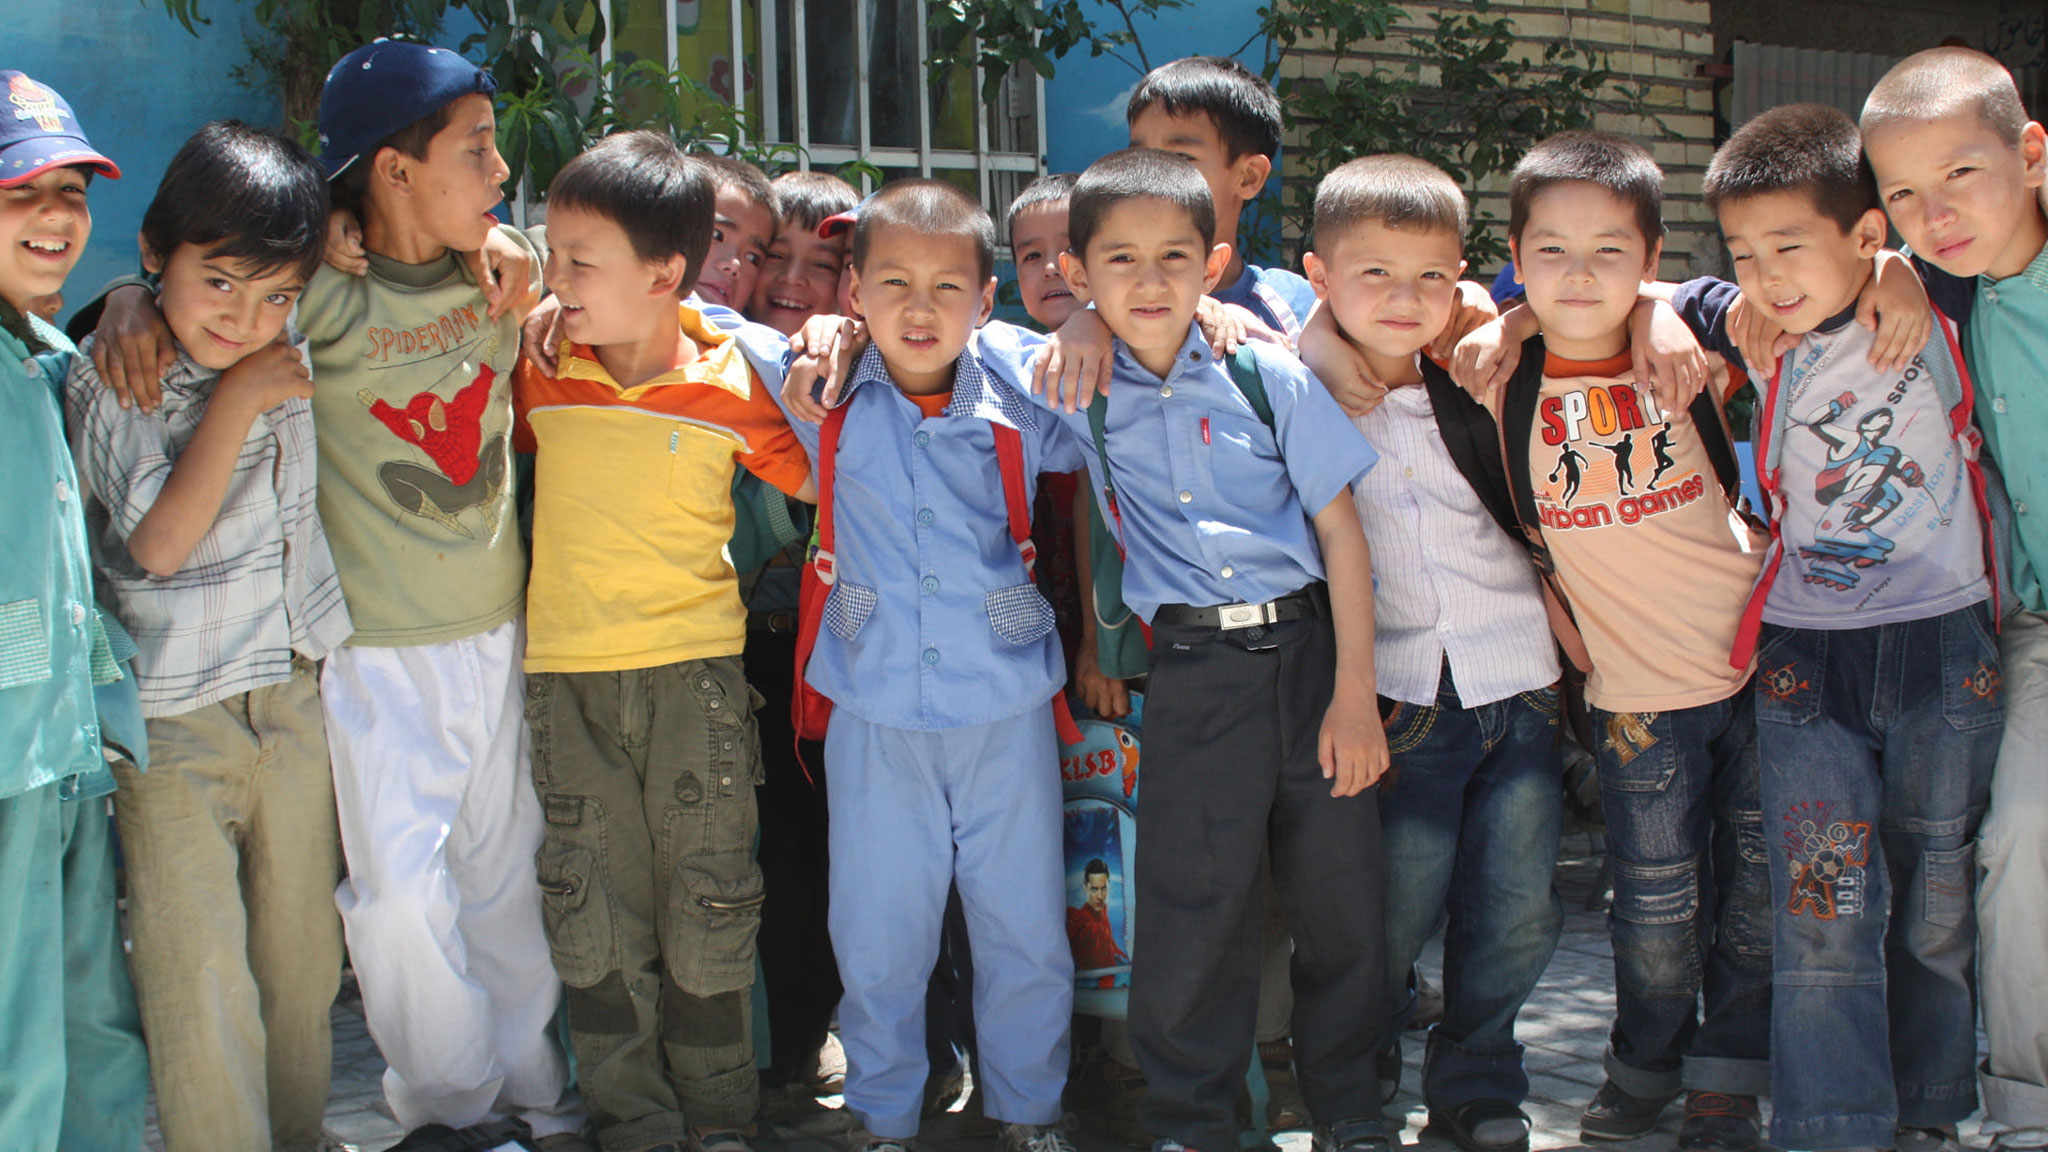 88 درصد از كودكان پناهنده در ايران حق تحصيل در مدارس ايران را دارا هستند